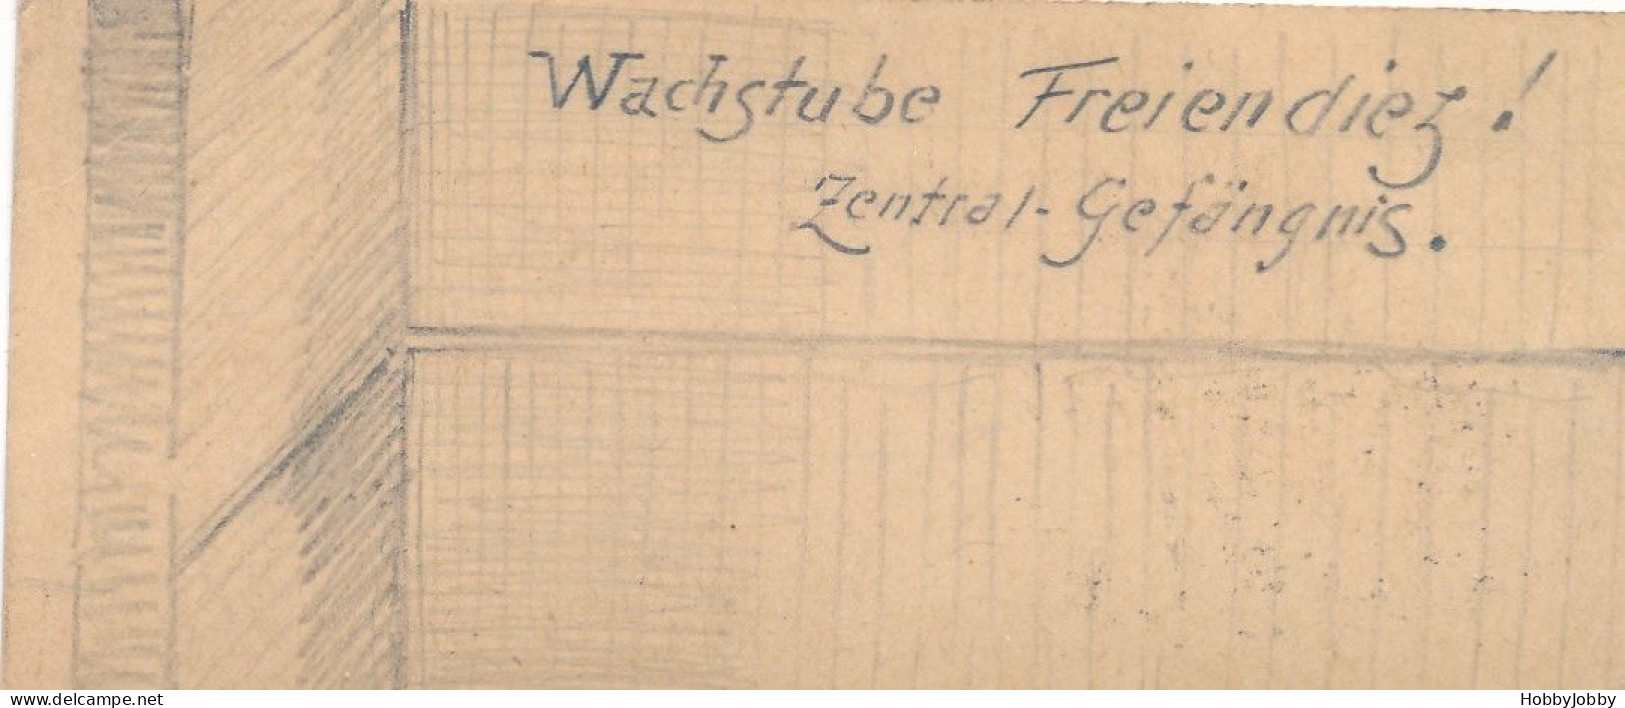 2 Stück I. WK Handgezeichnet-Bleistift:Wach-Stube Kaiser-Wilhelm-Kaserne + Wachstube-Freiendiez! Zentral Gefägnis. - Casernas